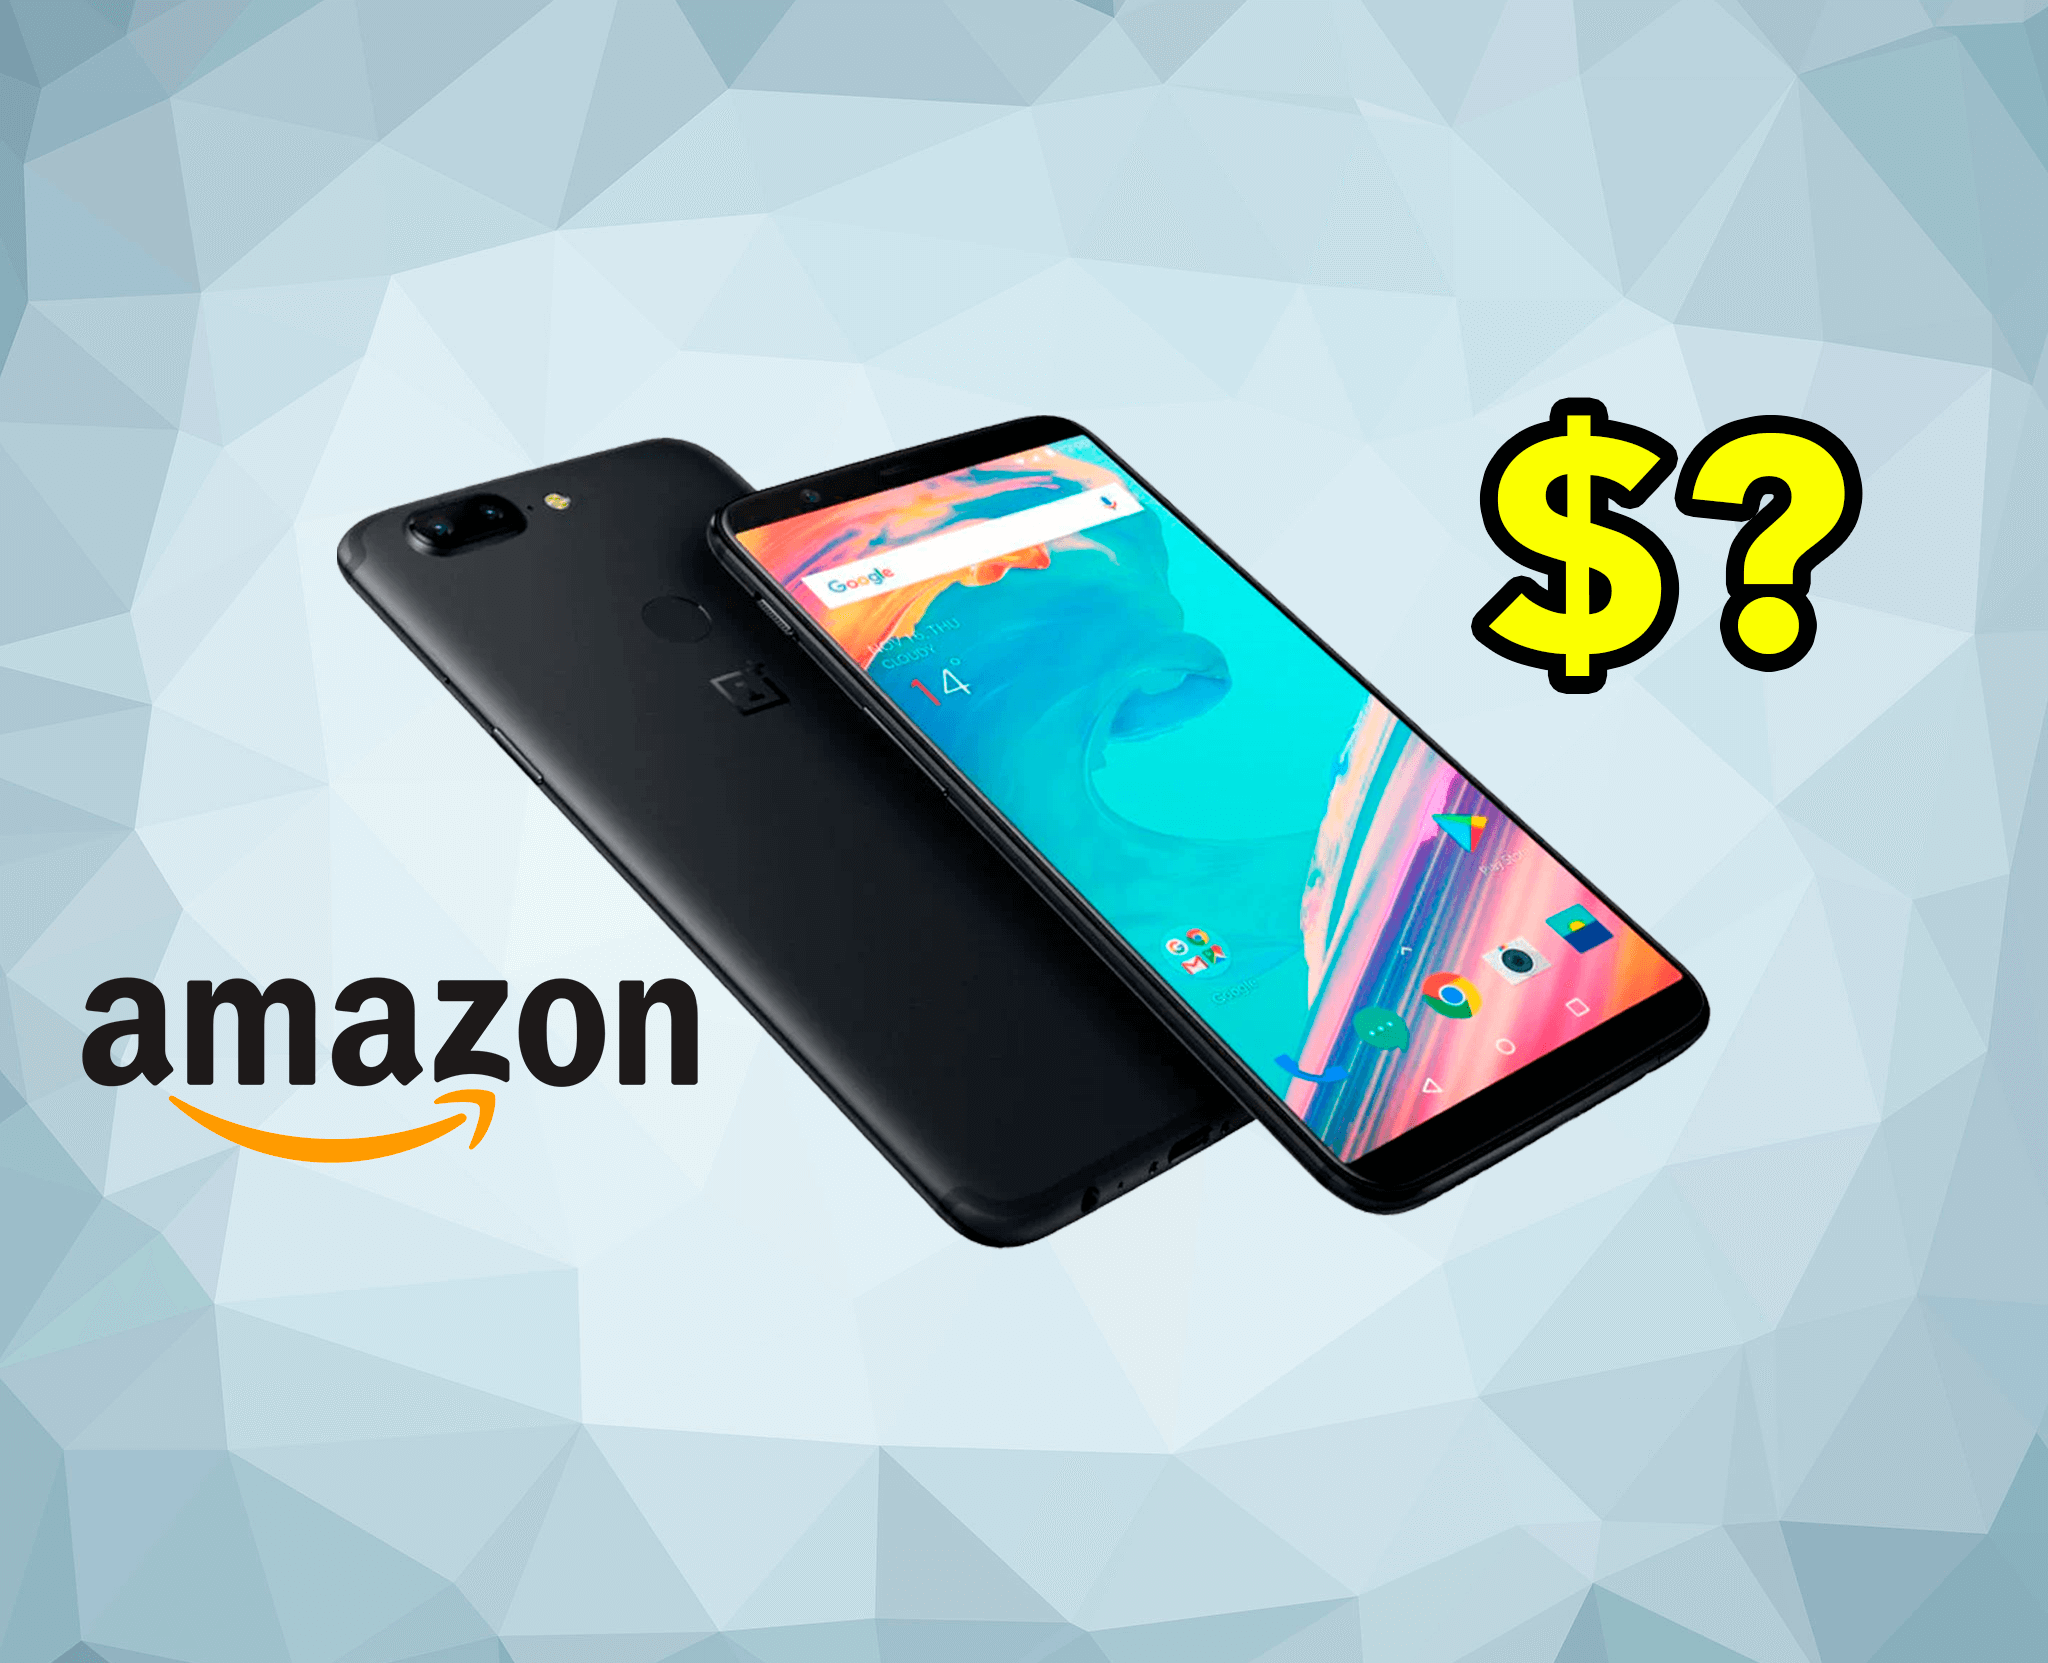 Vende tu móvil viejo a Amazon con Recommerce, ¿merece la pena?